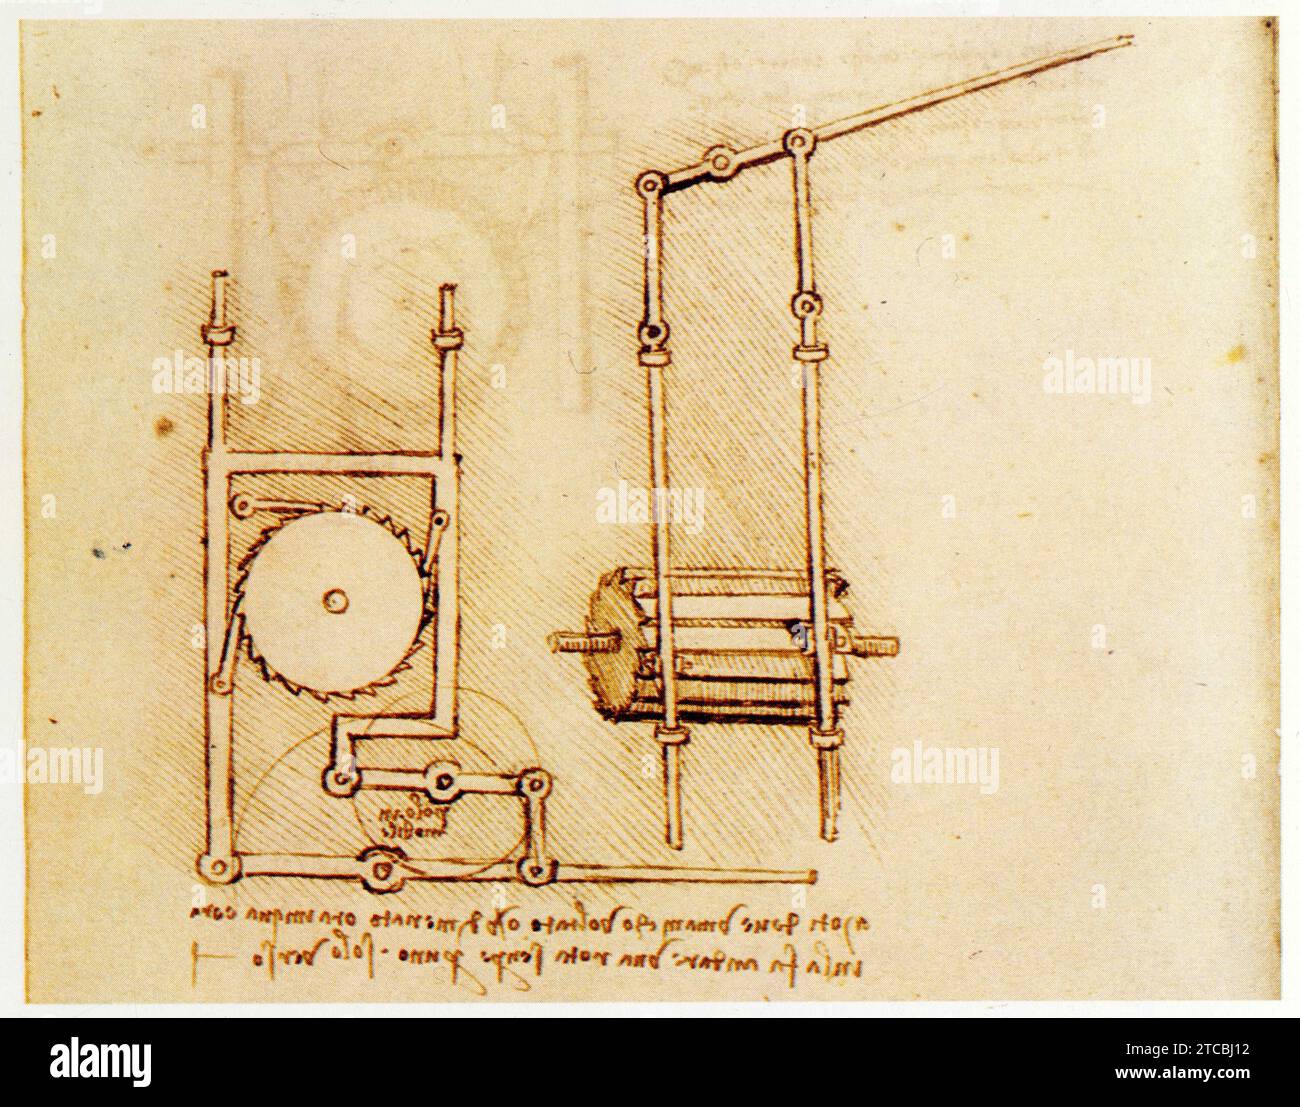 Leonardo da Vinci.1452-1519.la roue dentée dans la transmission du mouvement.Mouvement trasversale alternatif produisant un mouvement rotatif Foto Stock